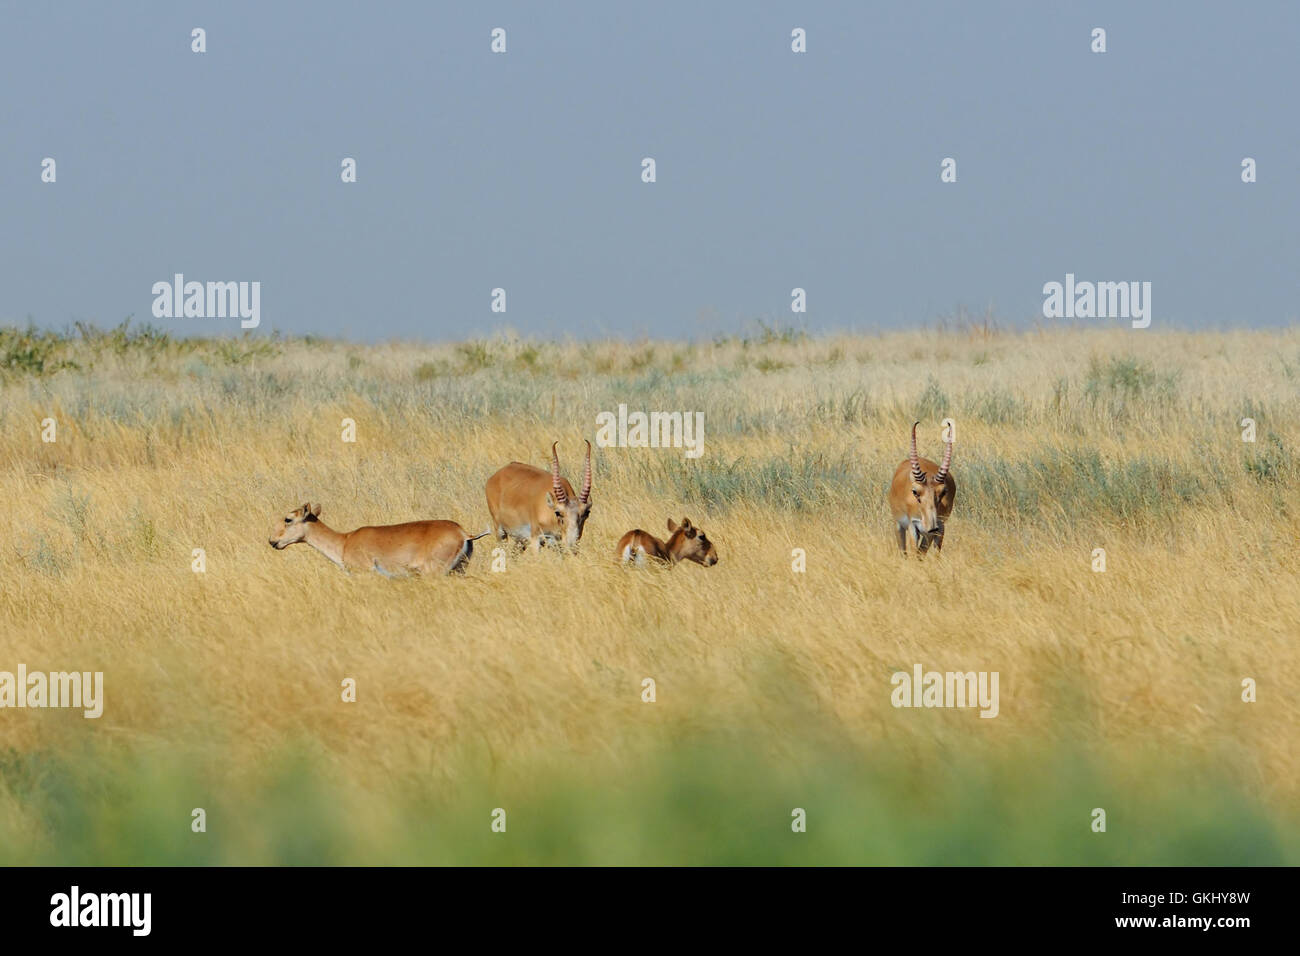 Critically endangered wild Saiga antelopes (Saiga tatarica) in morning steppe. Stock Photo